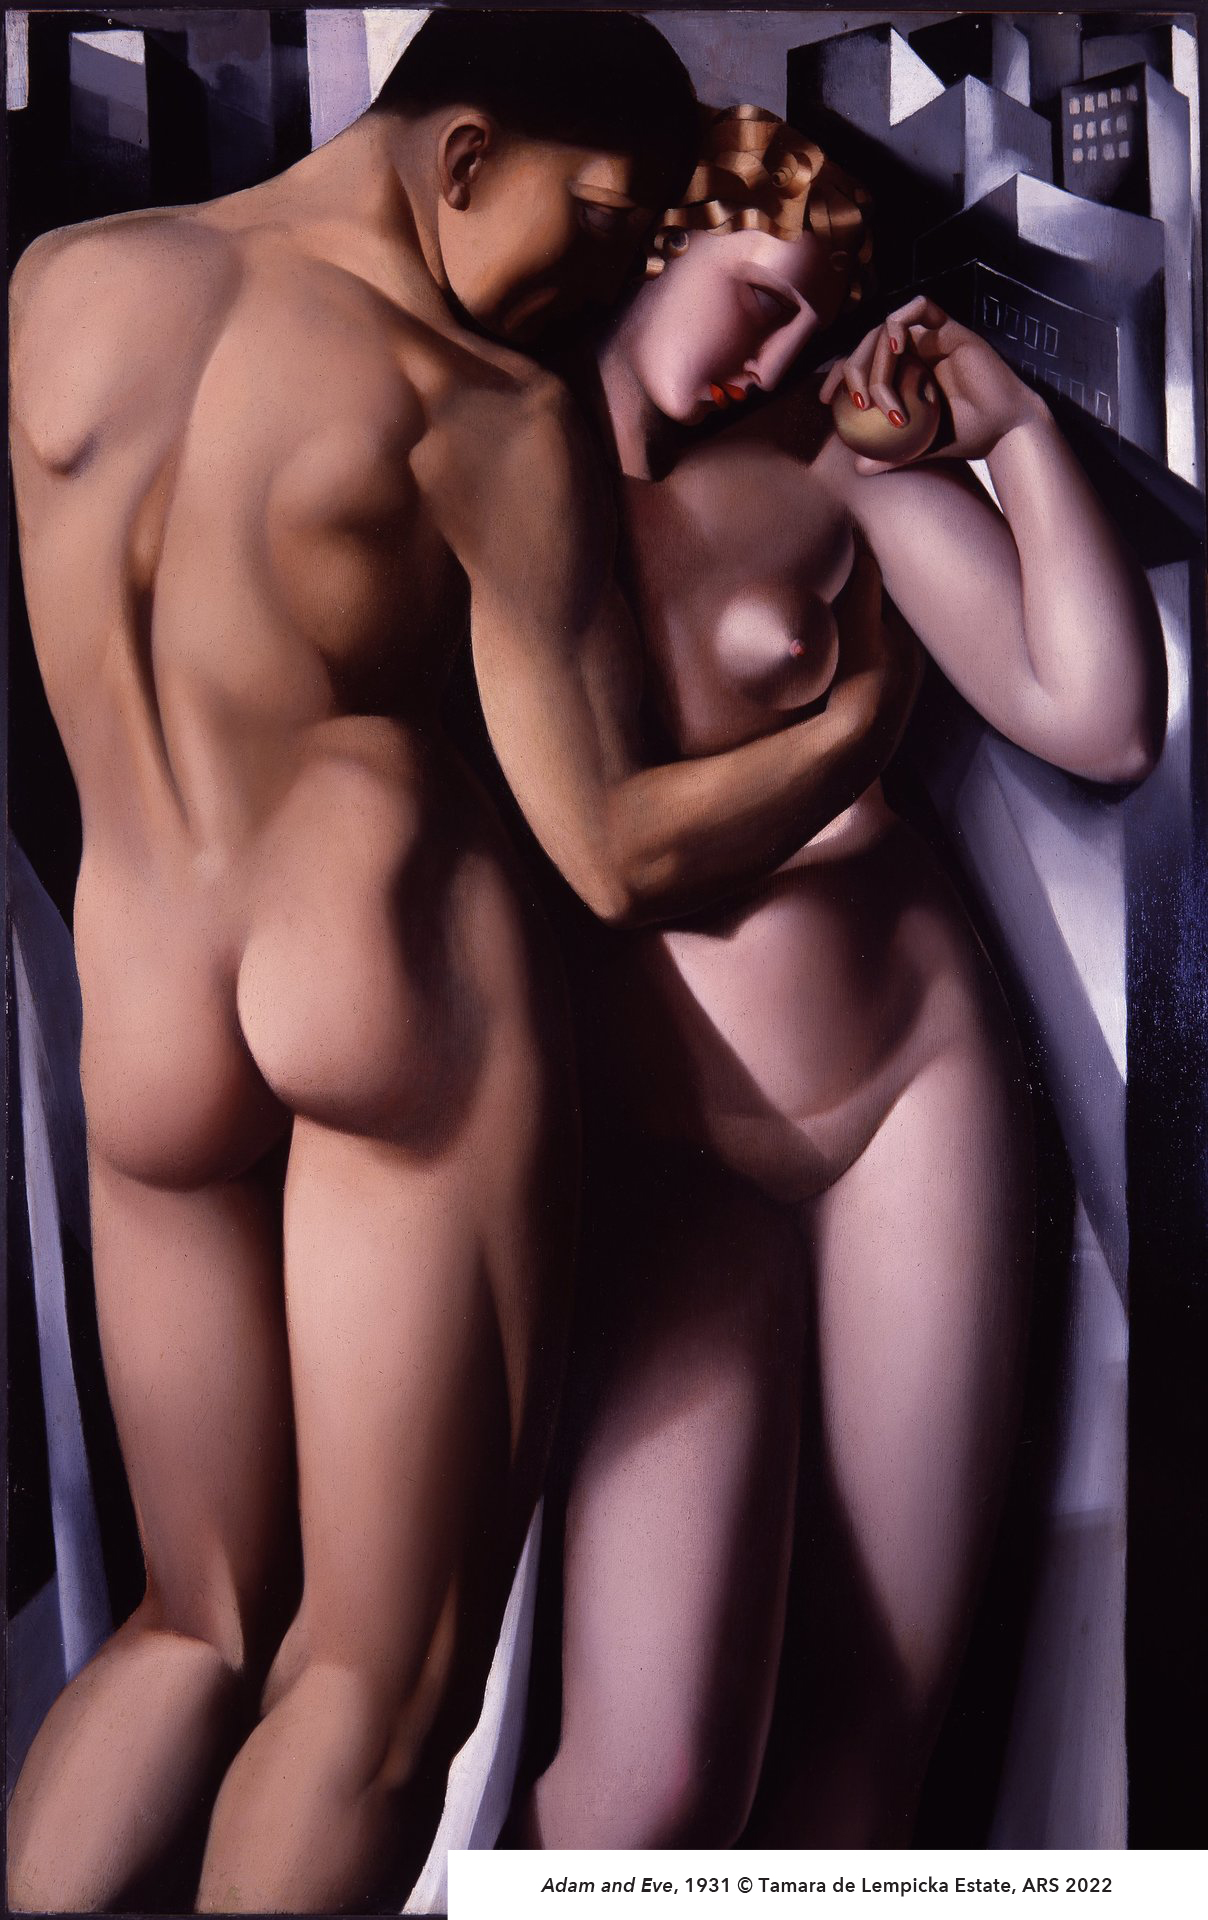 Adam and Eve, 1931 ©️ Tamara de Lempicka Estate, ARS 2022; Copy used courtesy of Tamaradelempickaestate.com